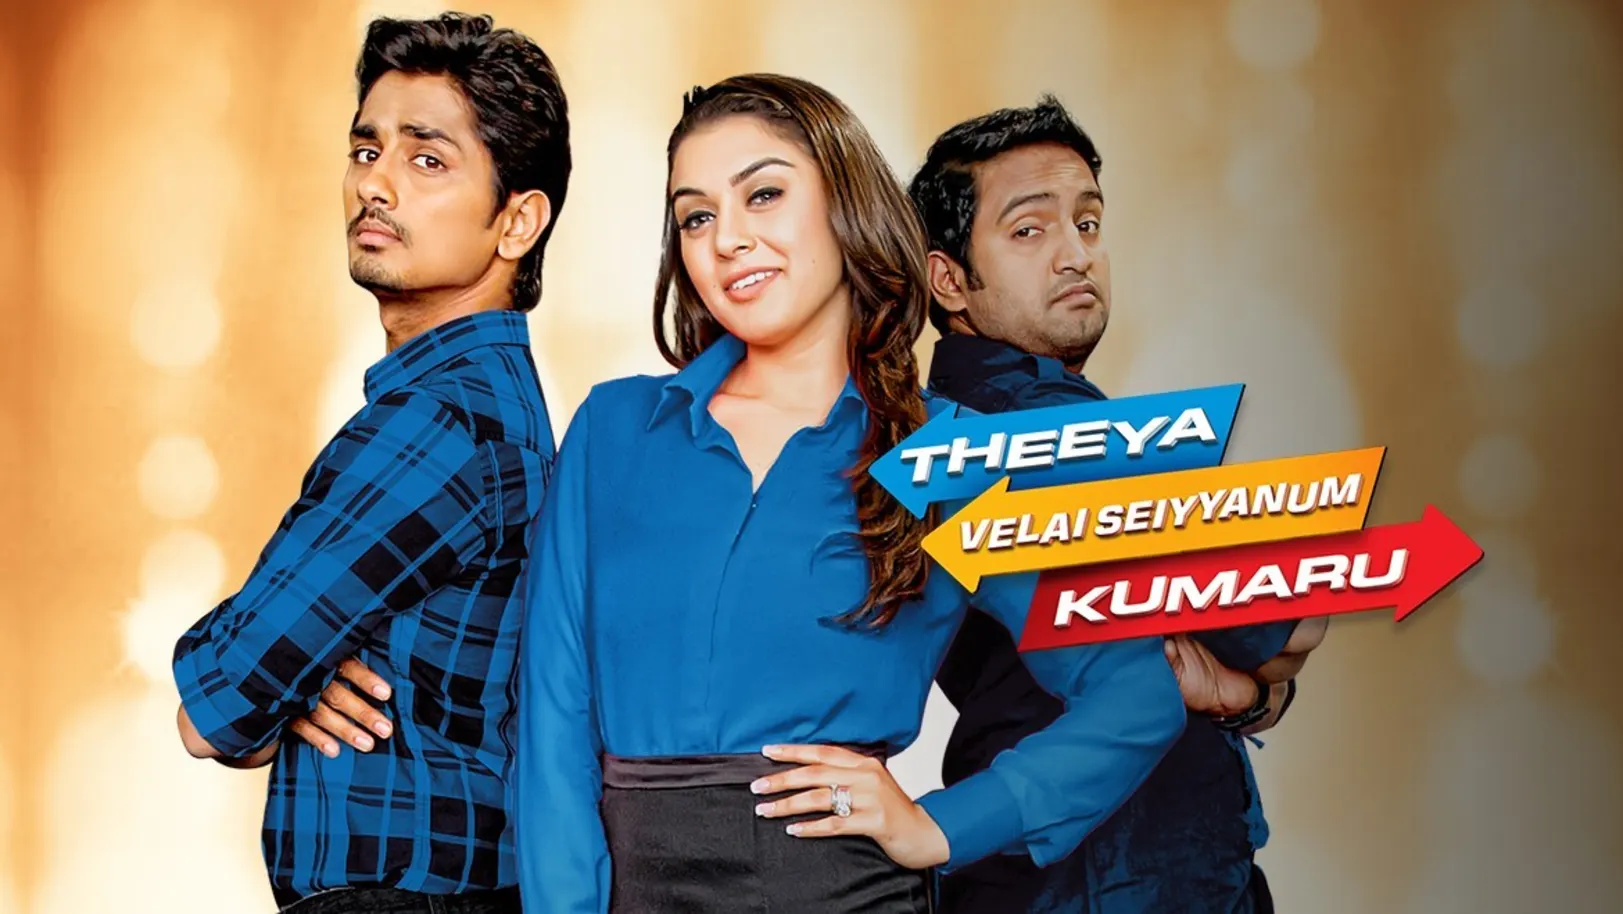 Theeya Velai Seiyanum Kumaru Movie